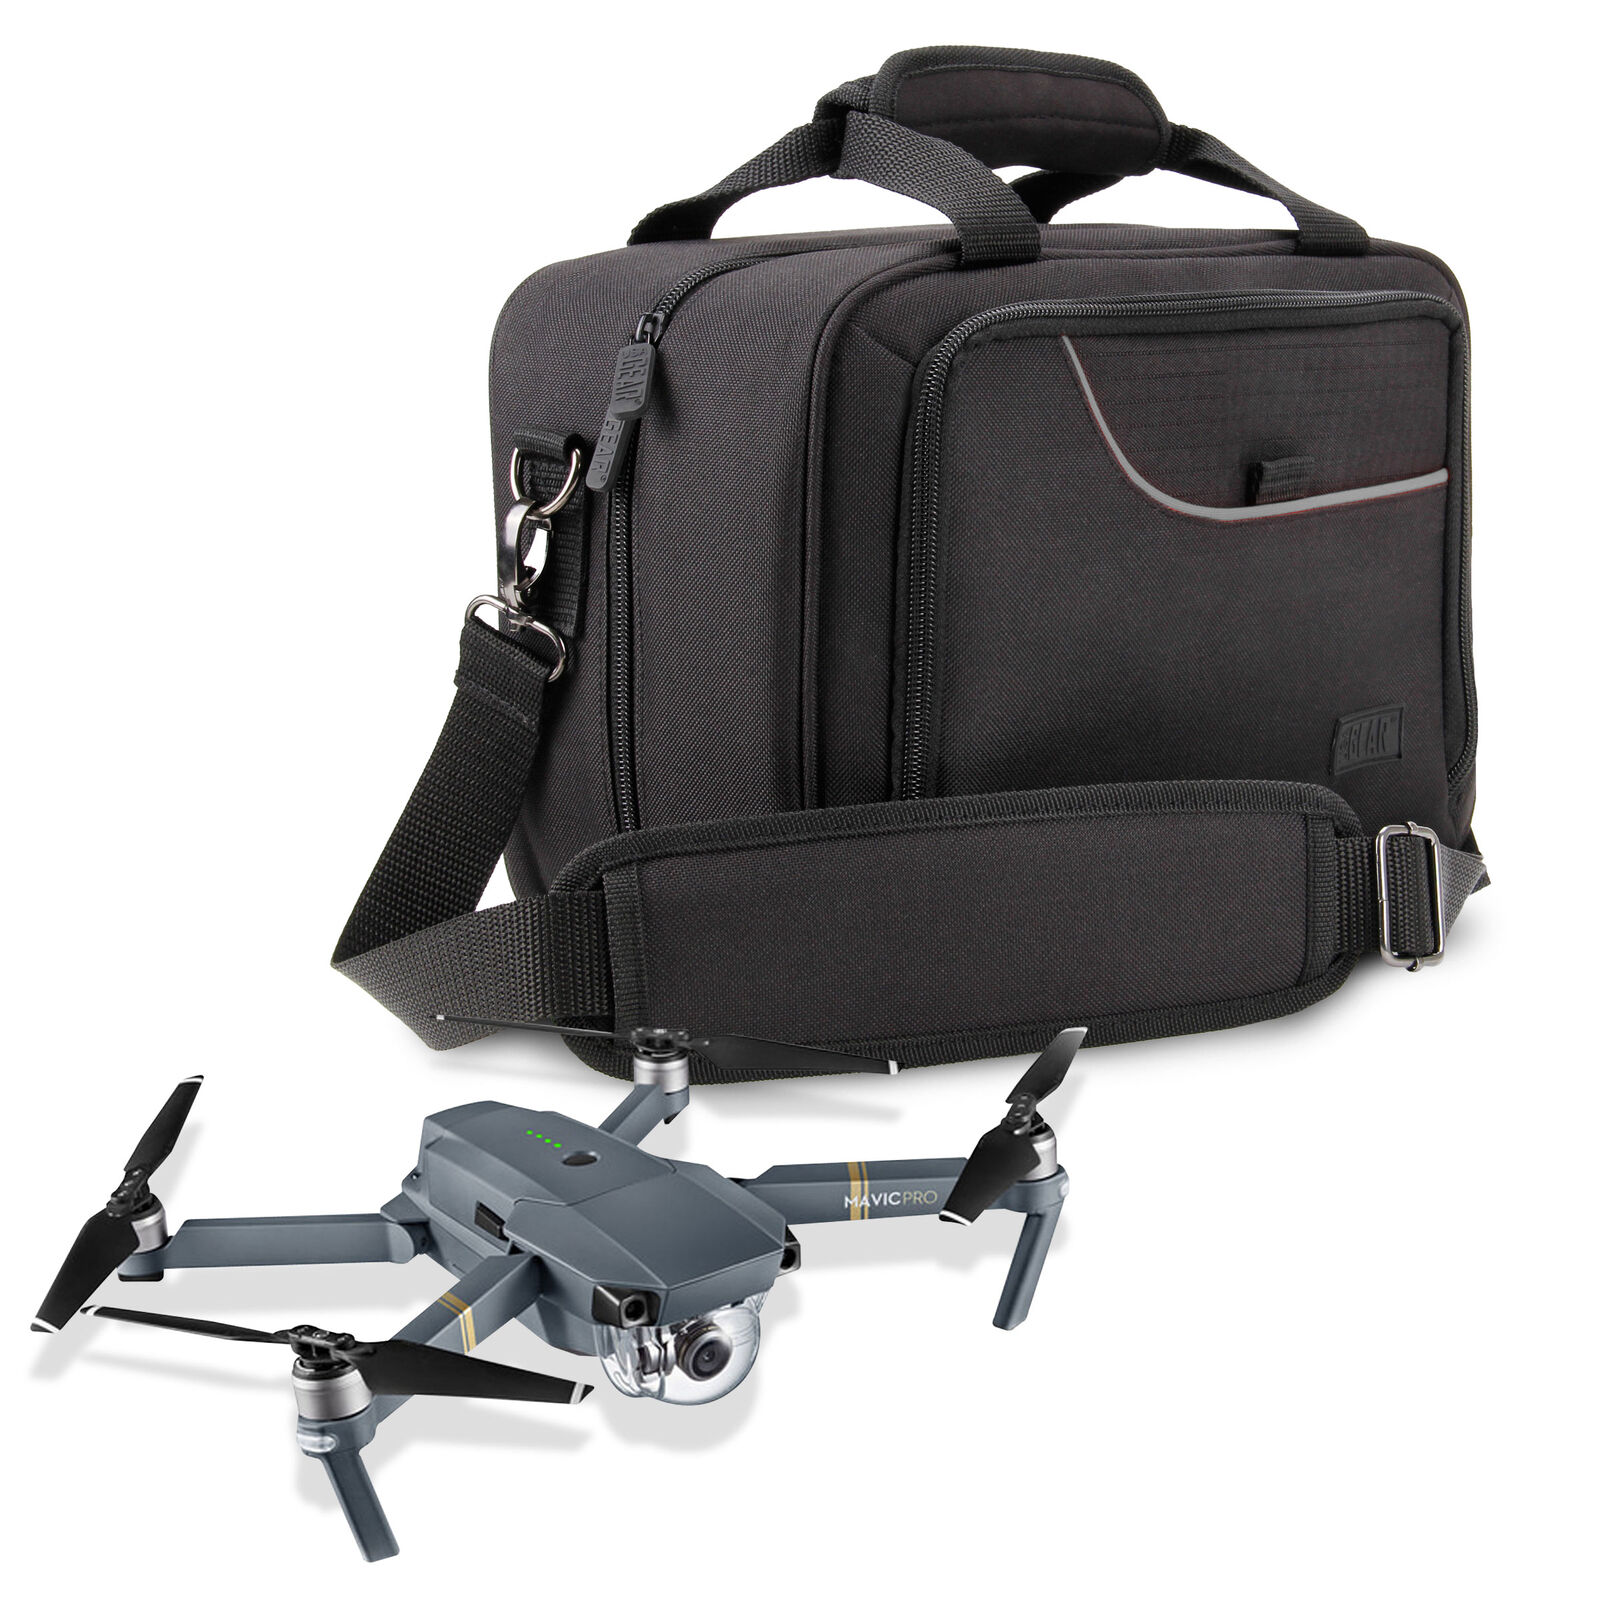 USA Gear DJI Mavic Pro Drone Case